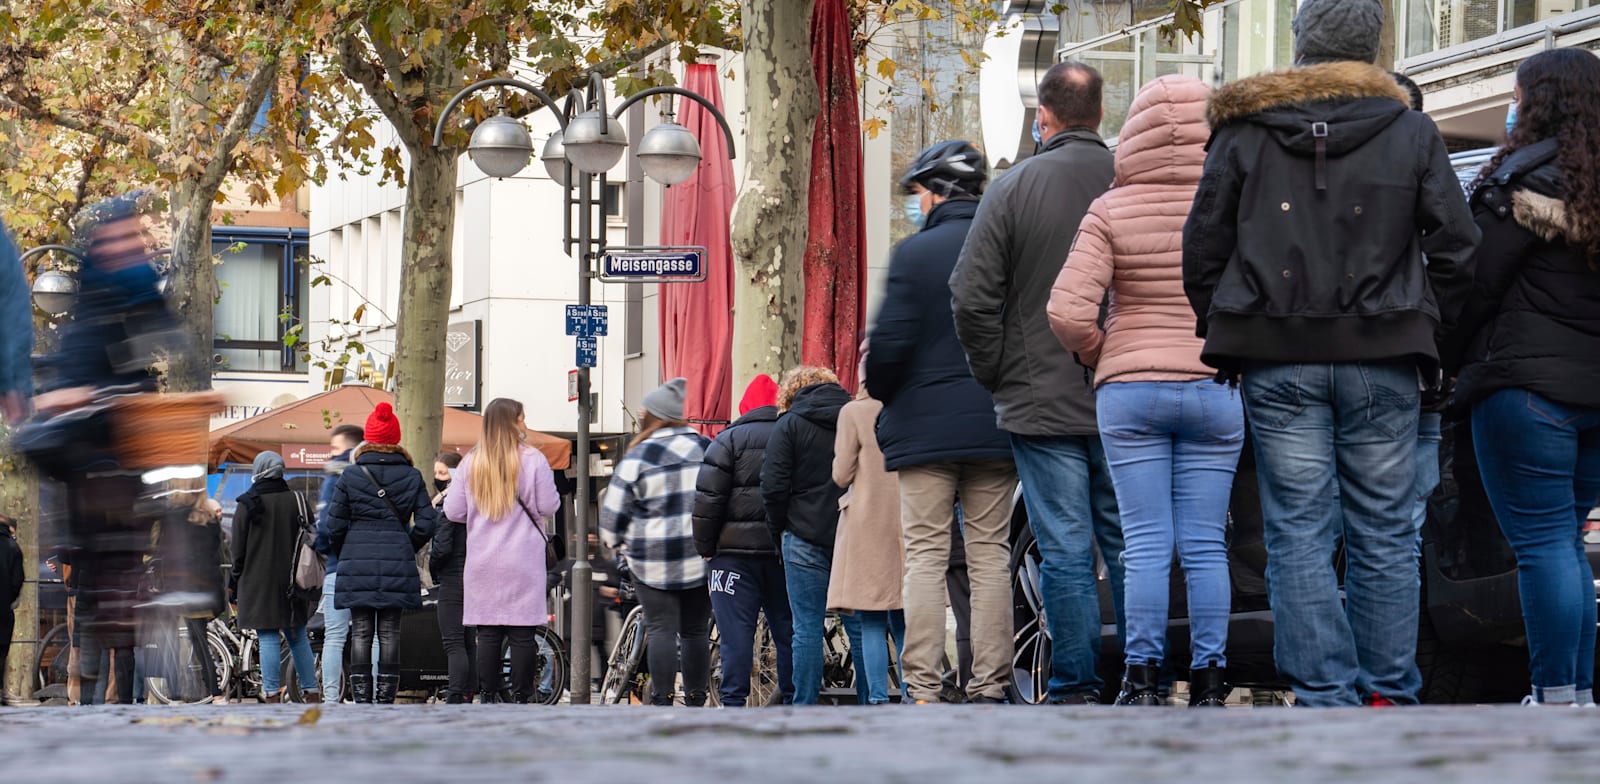 תורים ארוכים לבתי עסק בגרמניה לקראת סגר שהולך להיות מוטל על המדינה / צילום: Associated Press, Frank Rumpenhorst